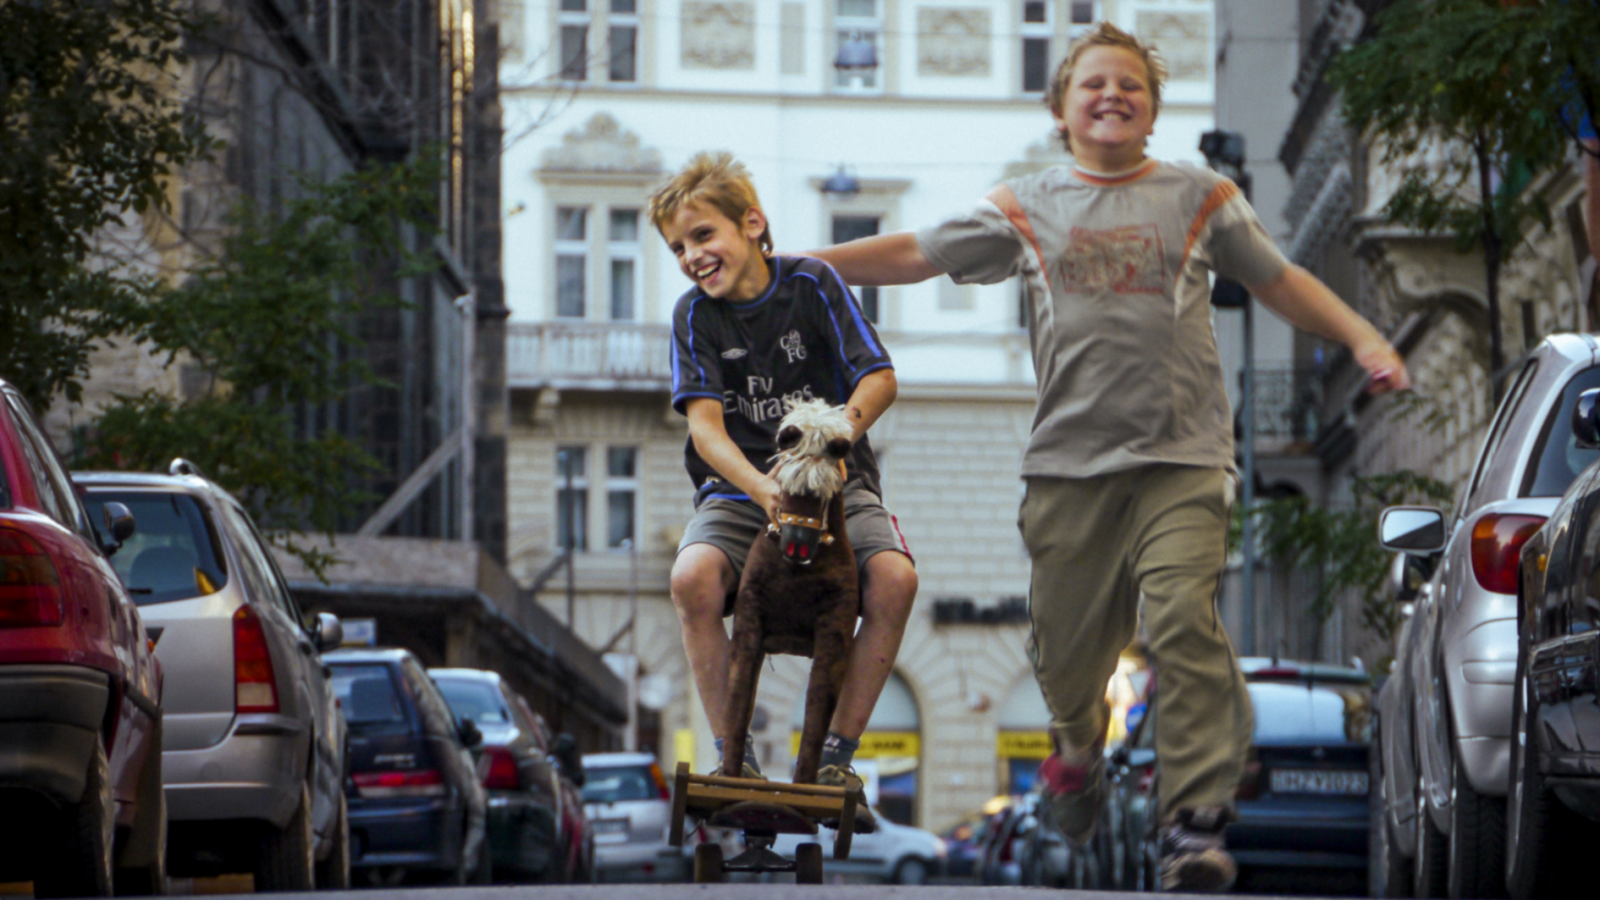 rus: Двоє усміхнених хлопчиків біжать по вулиці.